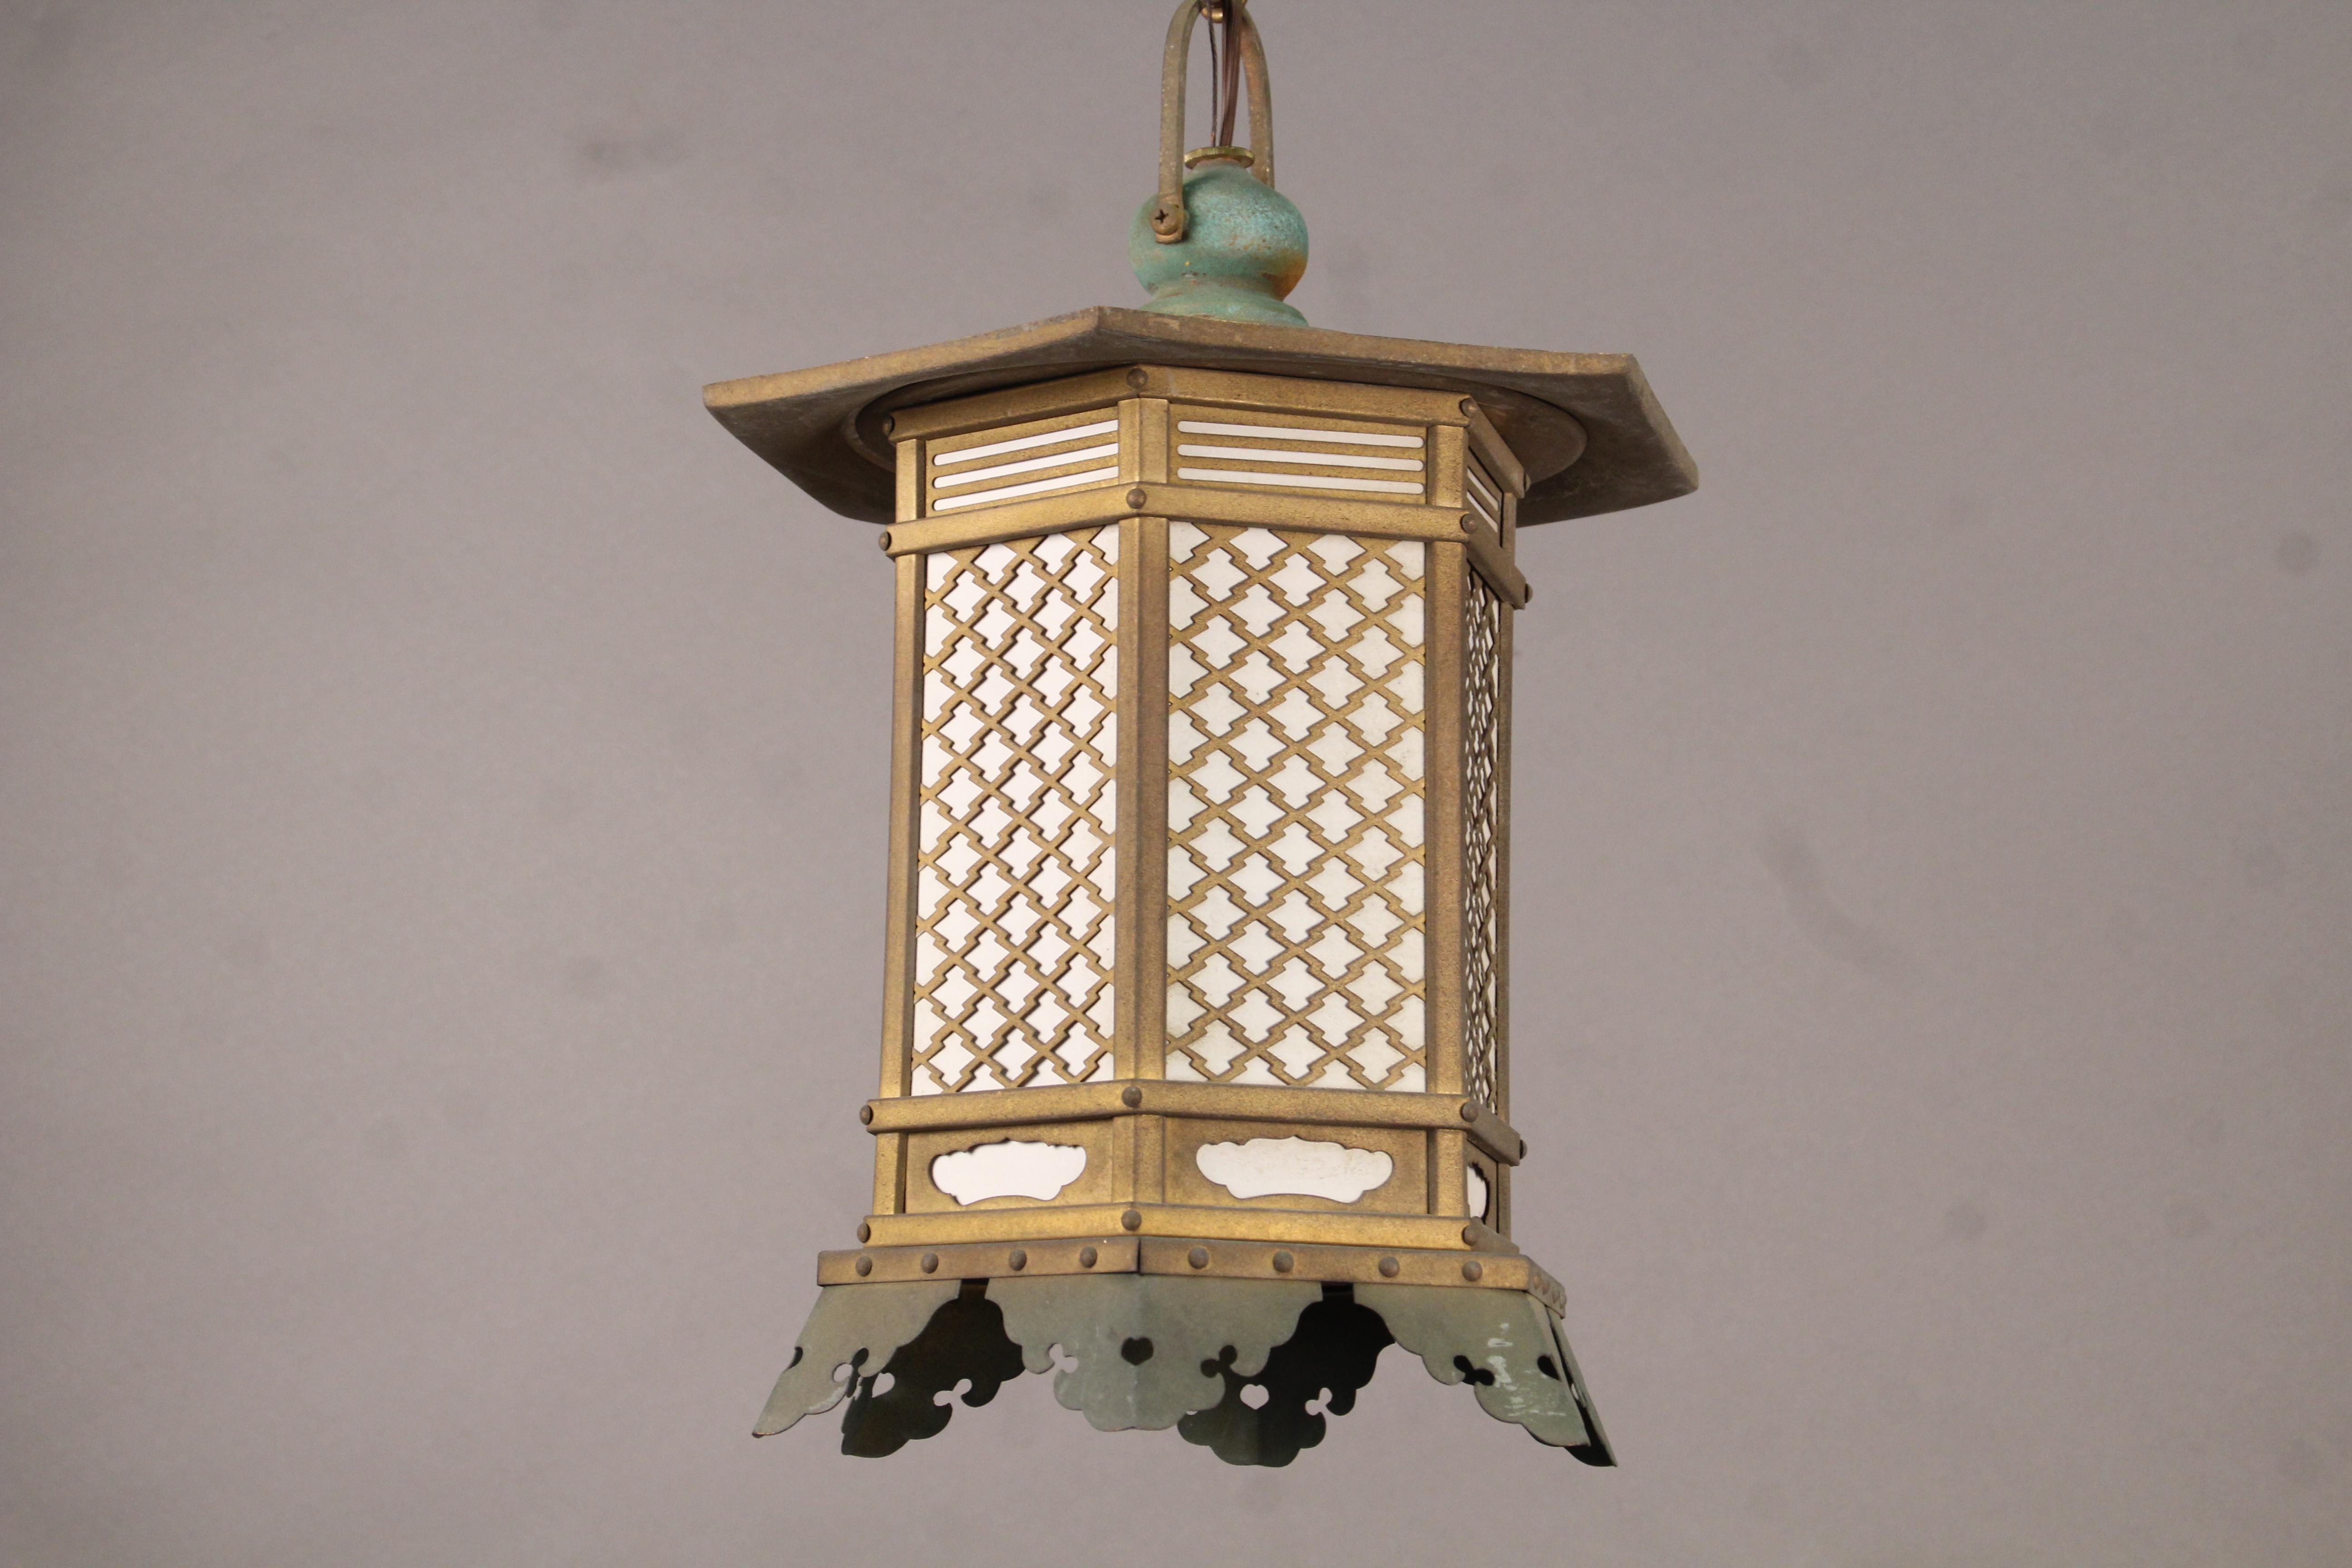 1 of 4 Antique Arts & Crafts Mission Elegant Japanese Lantern (Nordamerikanisch)